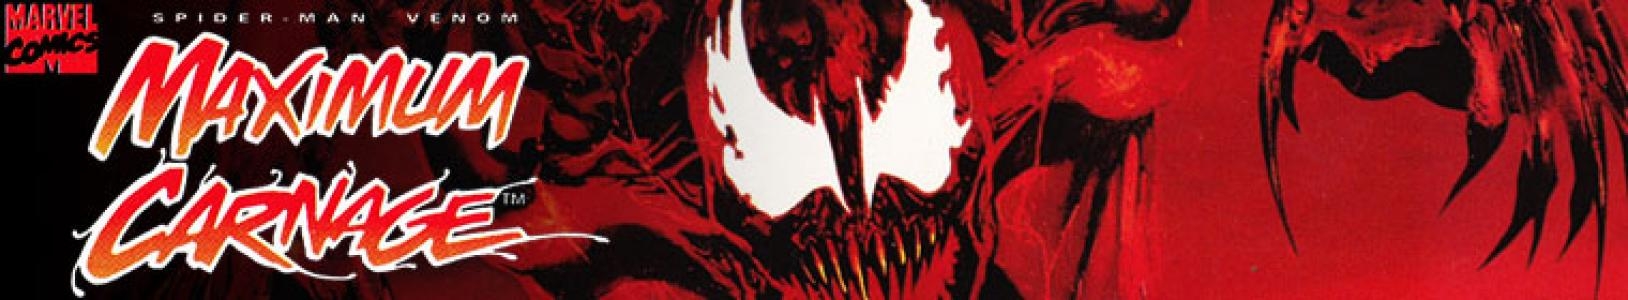 Spider-Man & Venom: Maximum Carnage banner